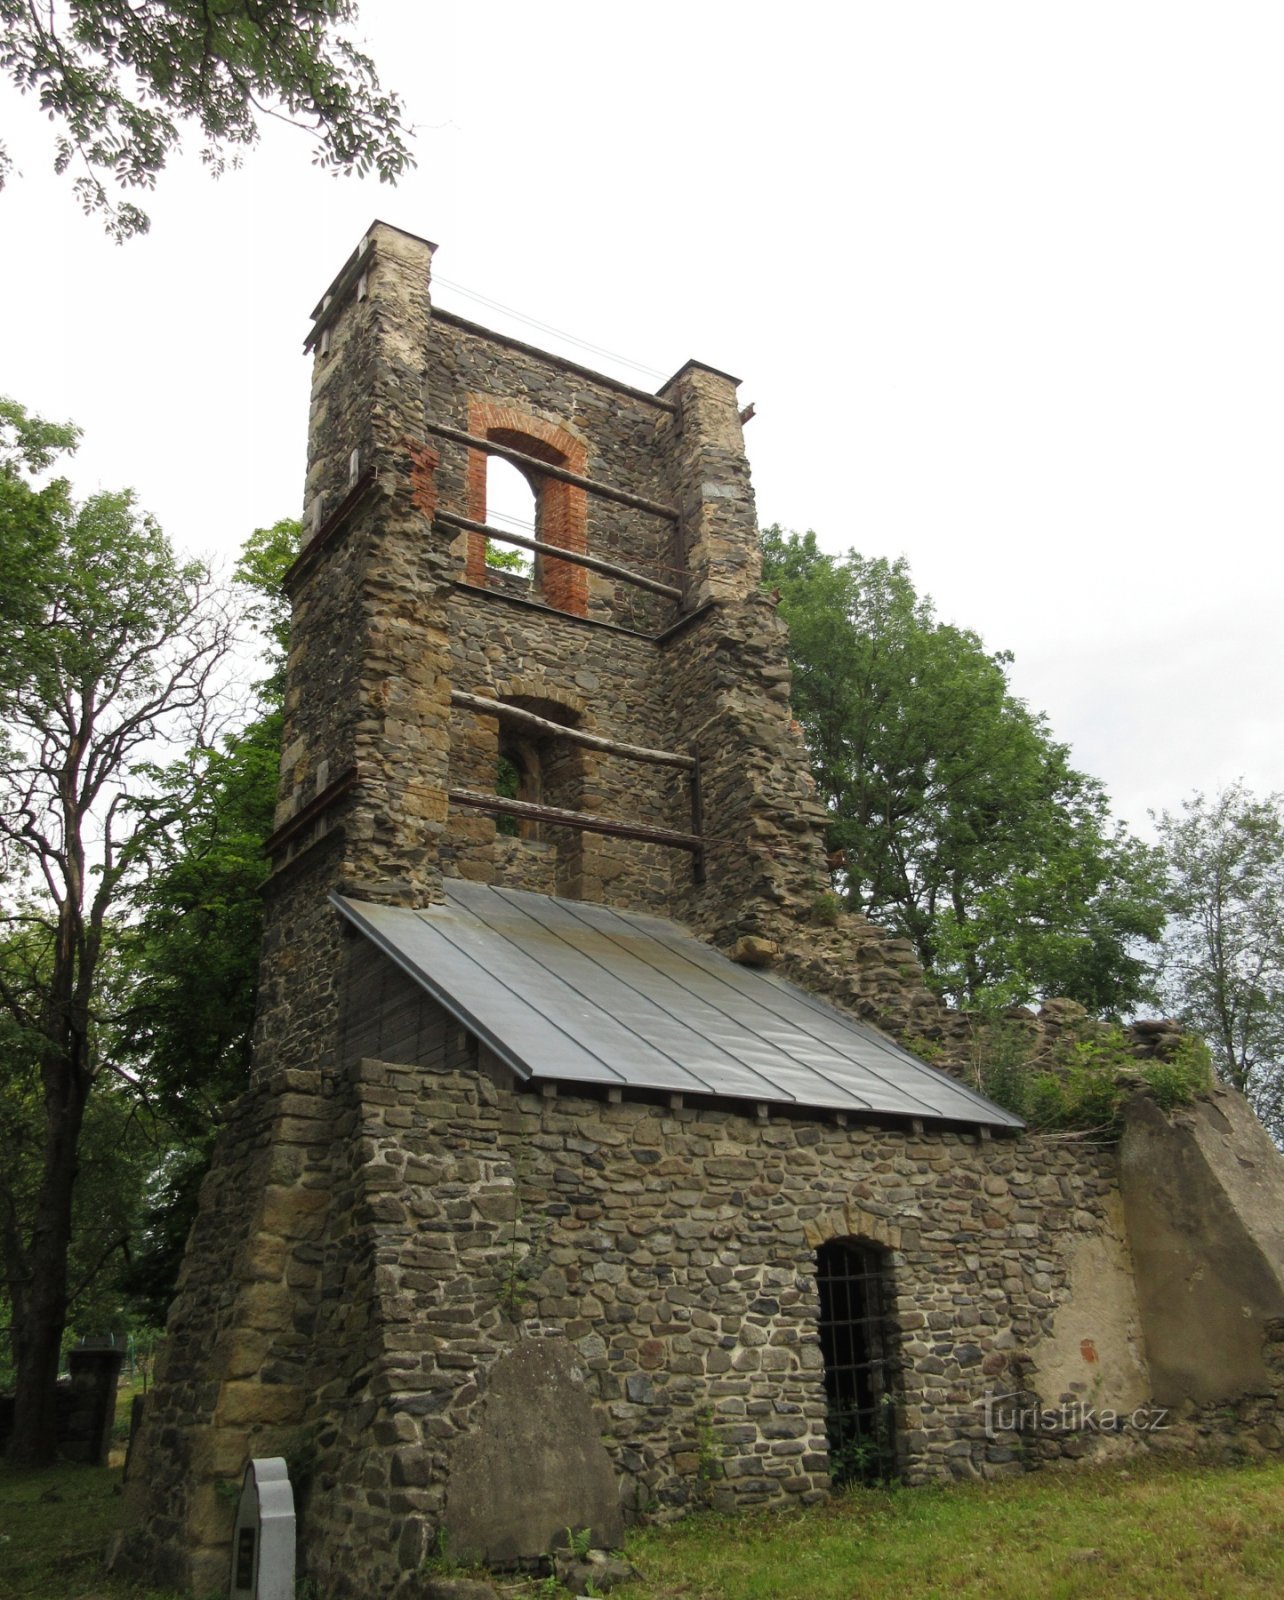 Mukařov - tàn tích của tháp chuông